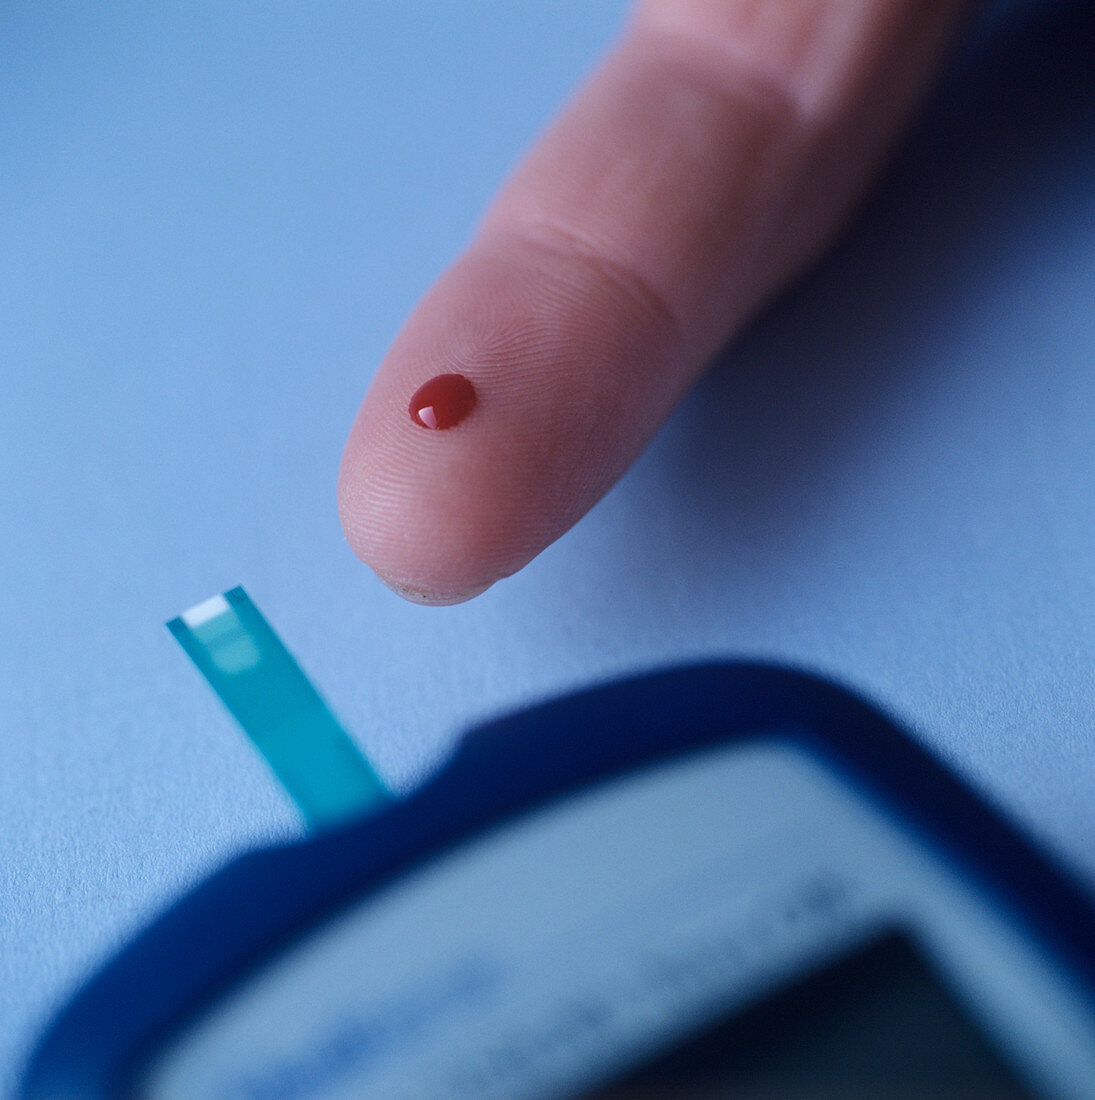 Diabetes blood testing